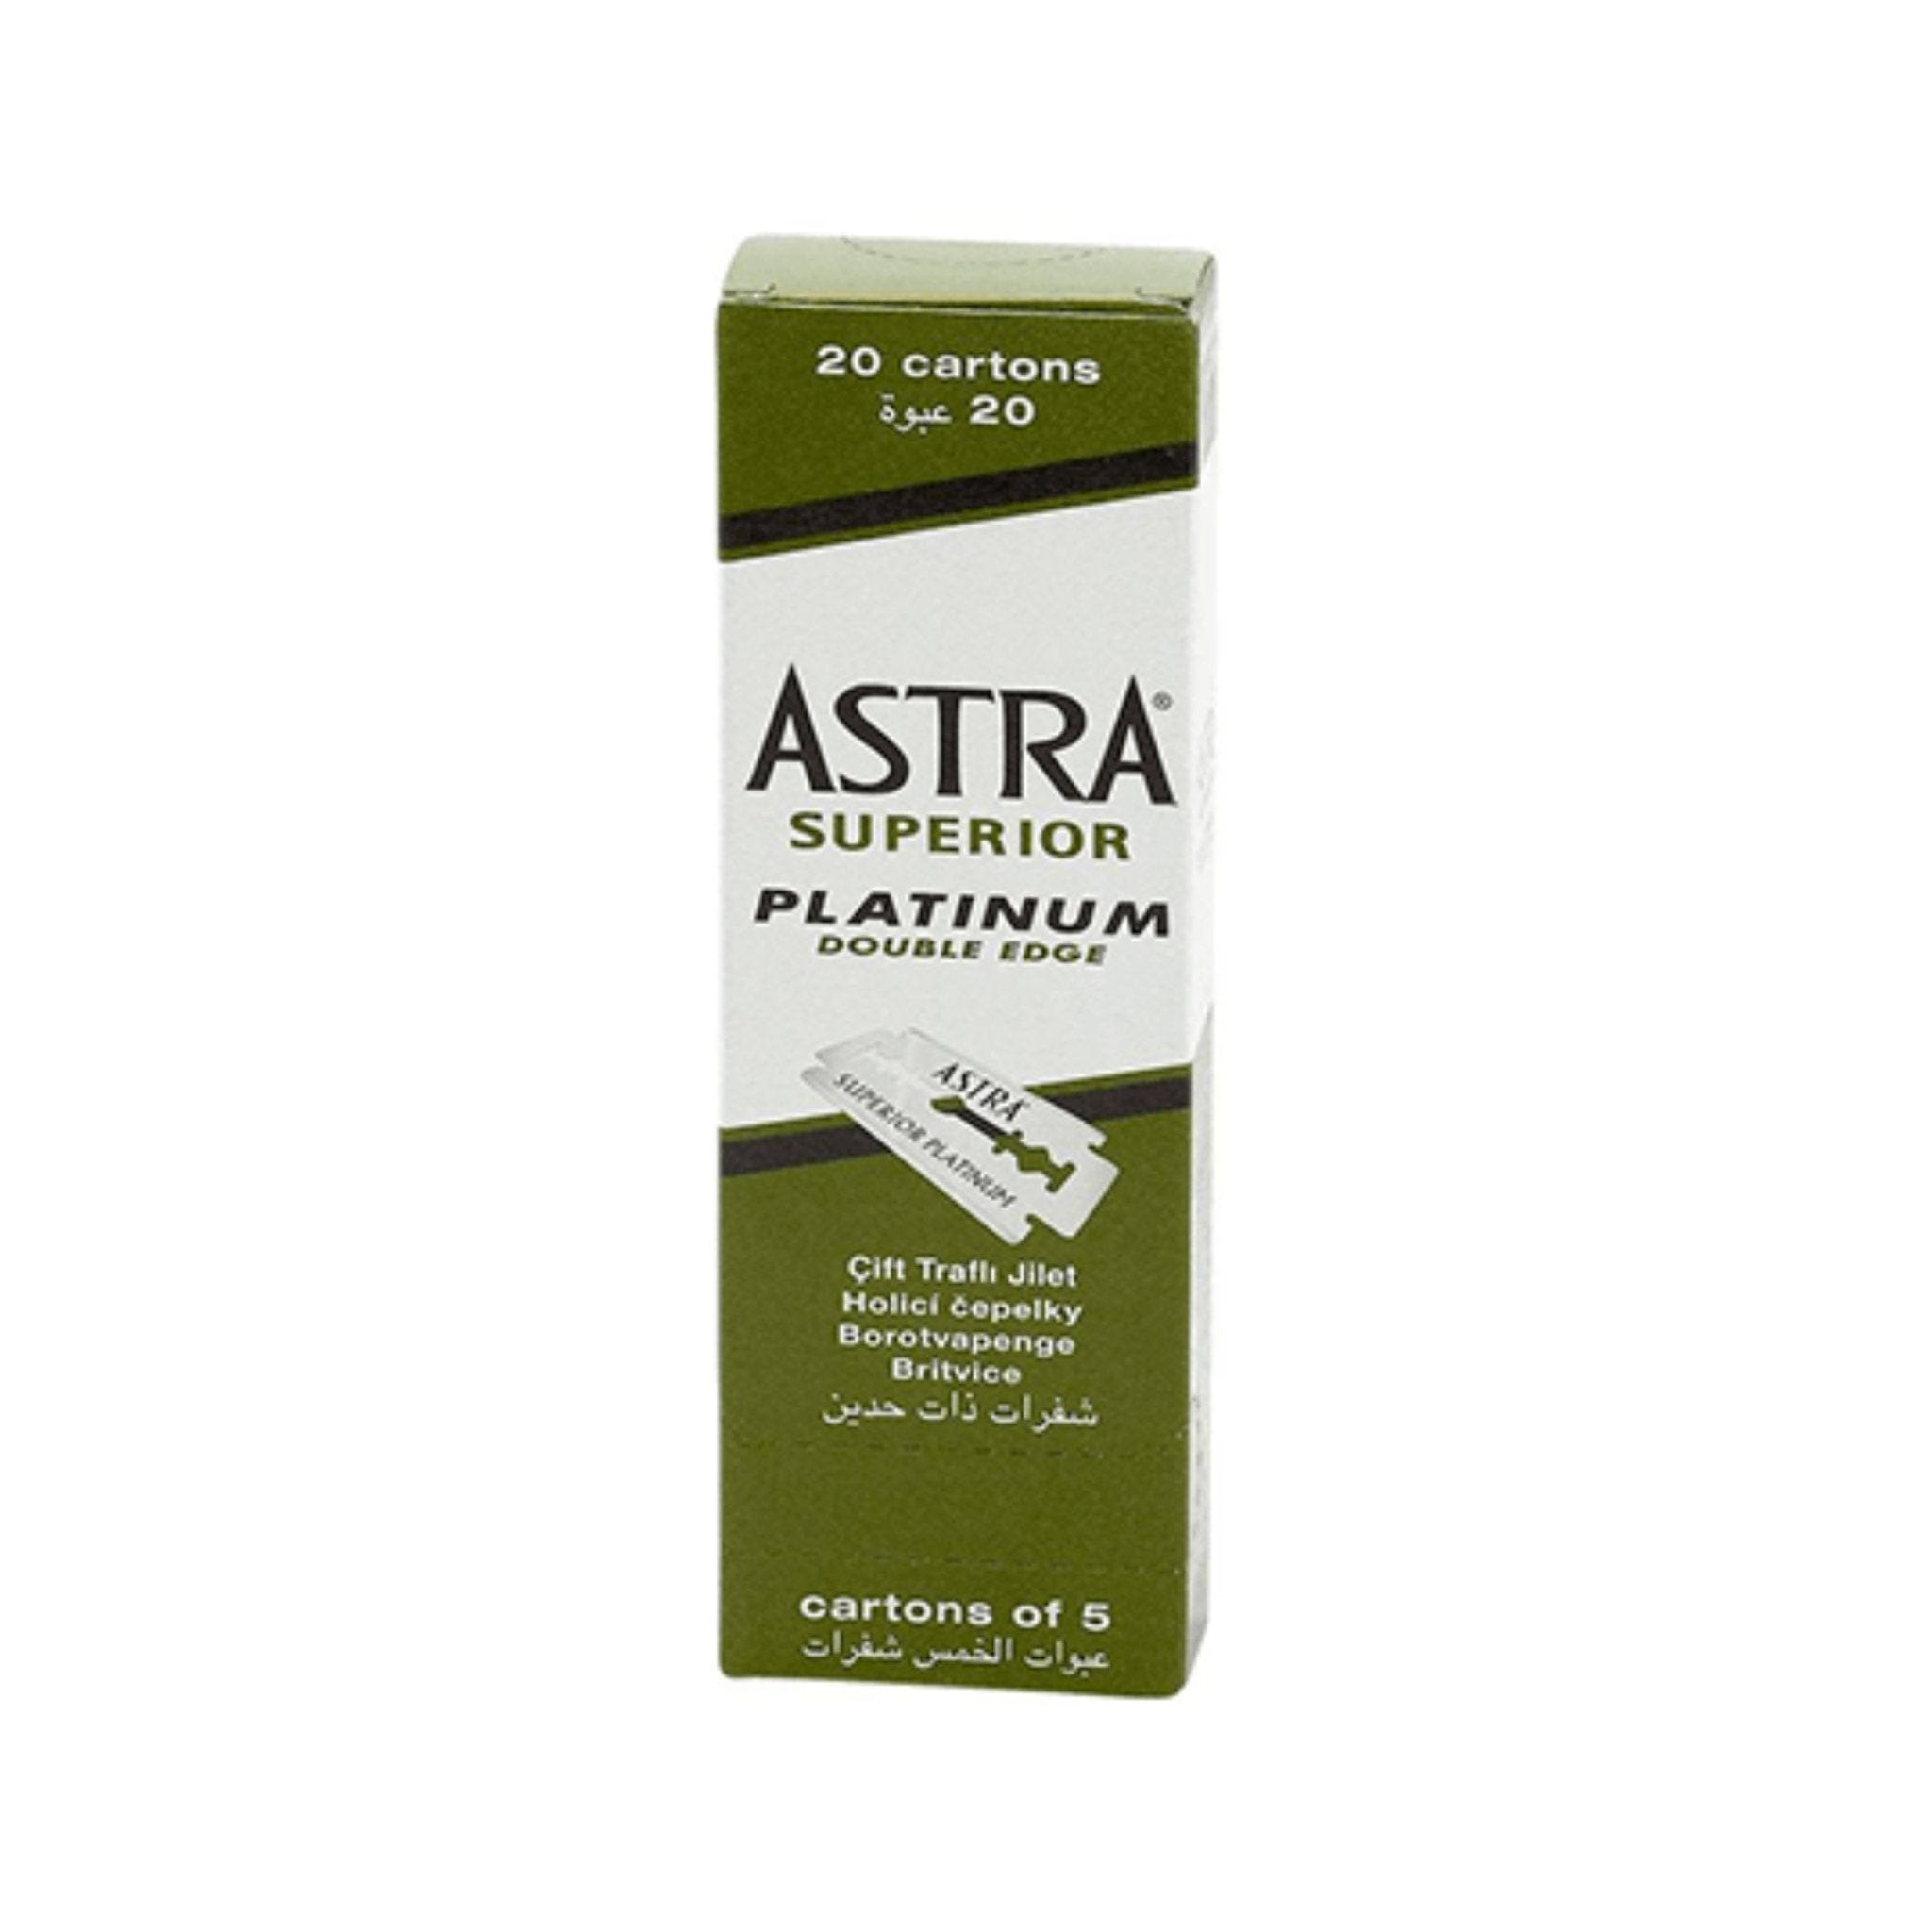 Astra Superior Platinum Double edge Blades.